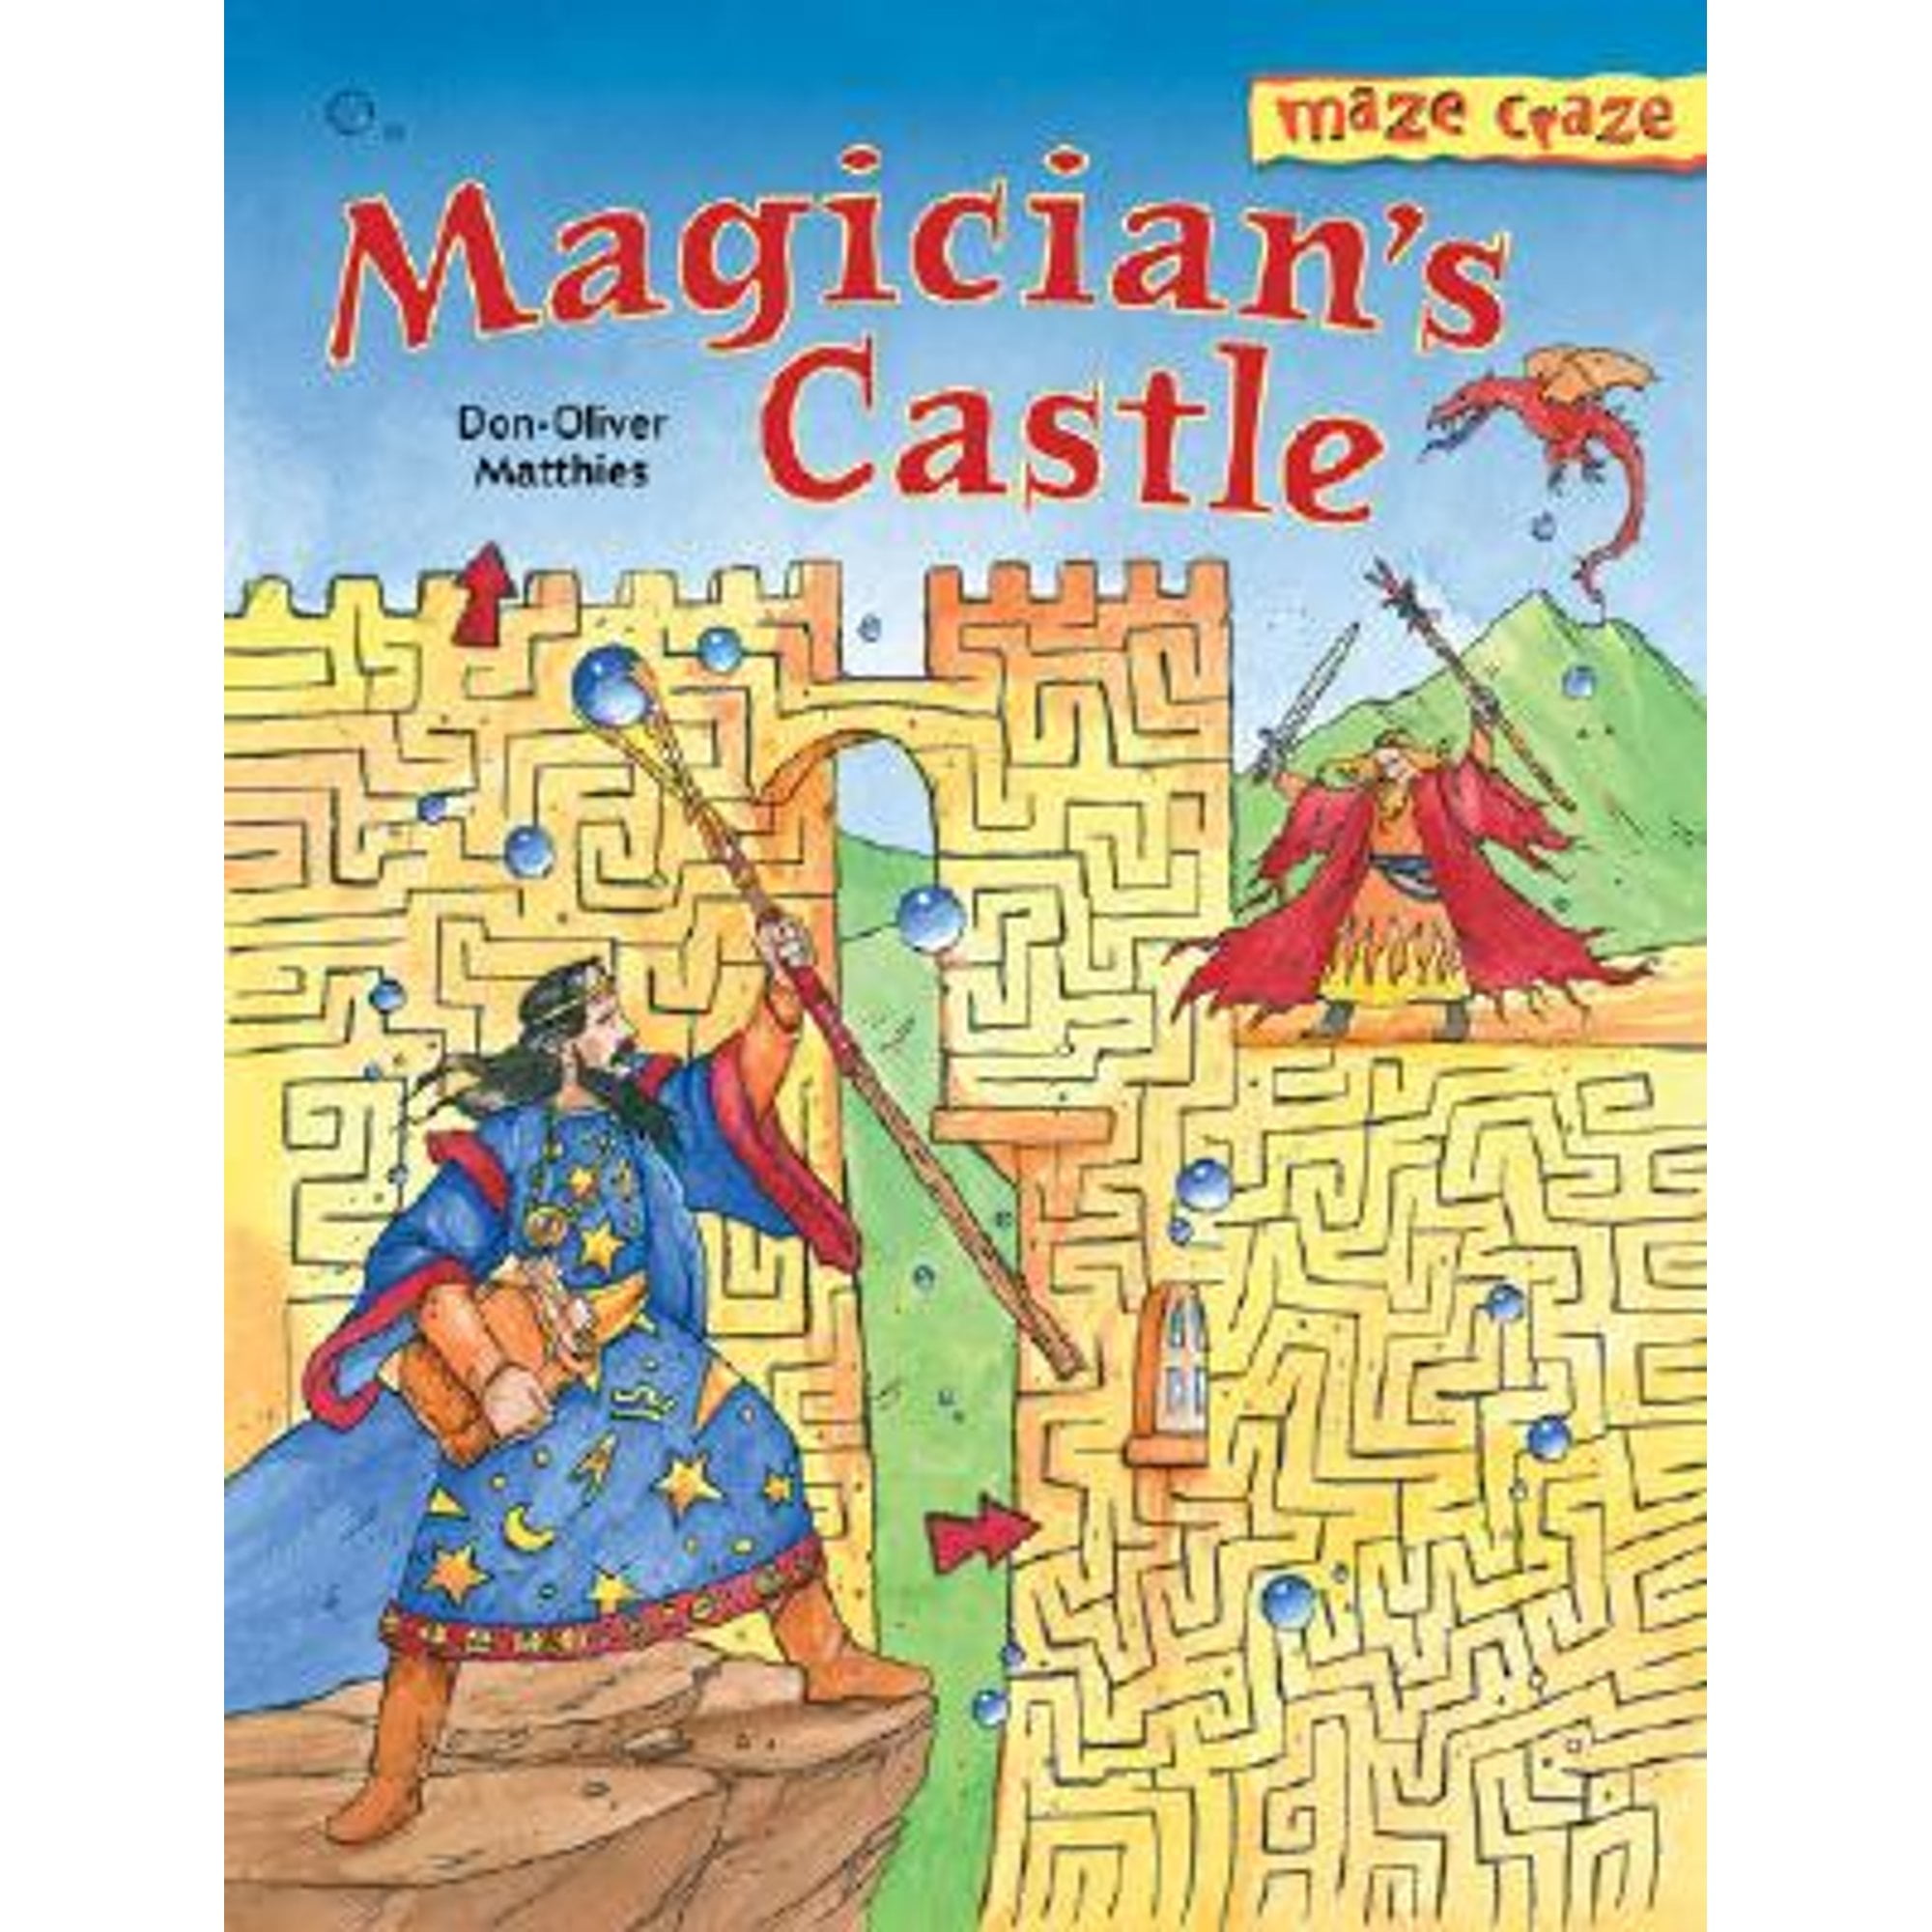 Pre-Owned Maze Craze: Magicians Castle Paperback Don-Oliver Matthies